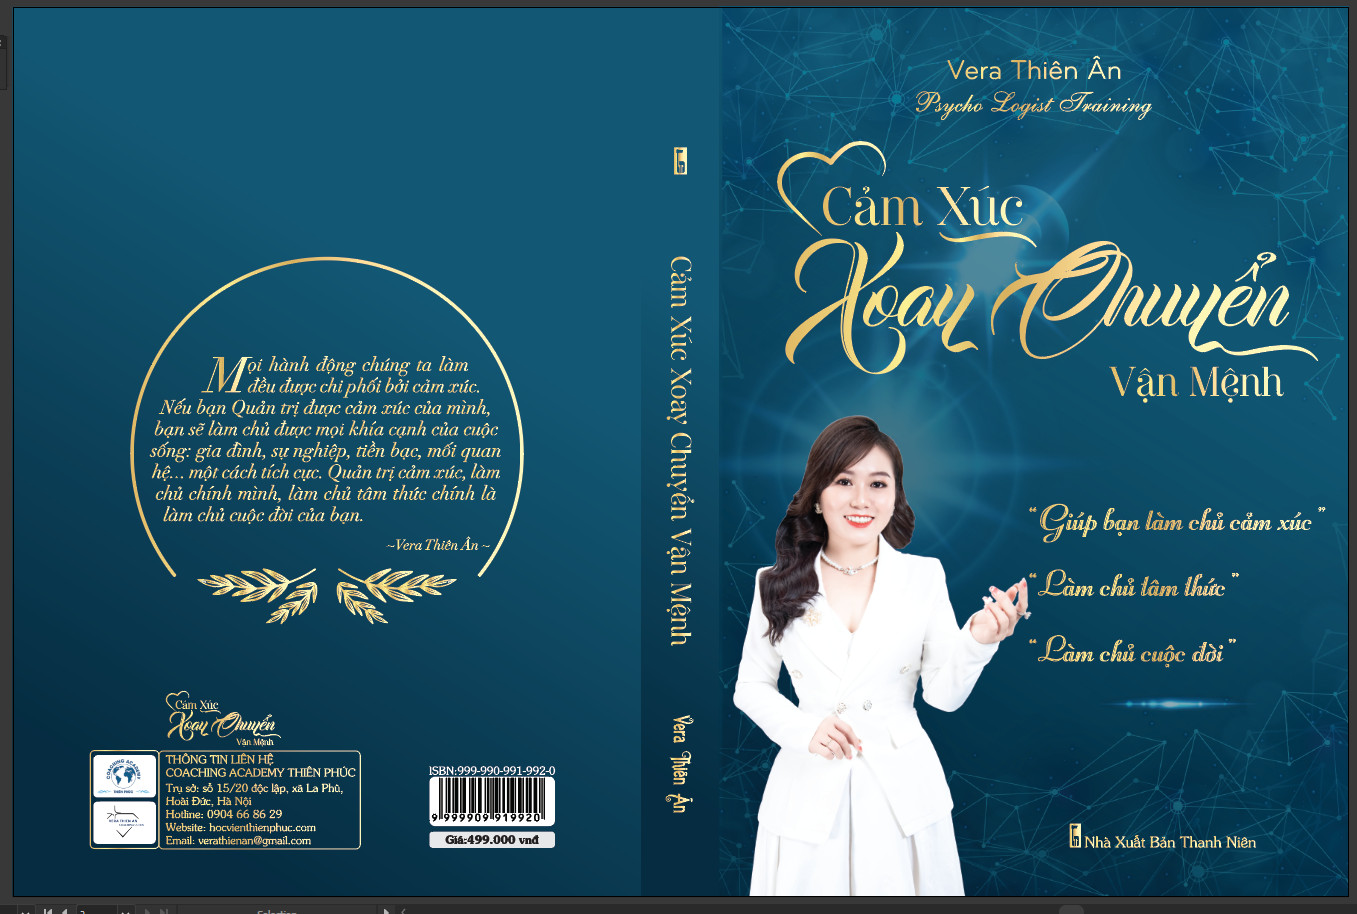 Title Cảm xúc xoay chuyển - Vera Thiên Ân (Nguyễn Thị Thanh Hương)